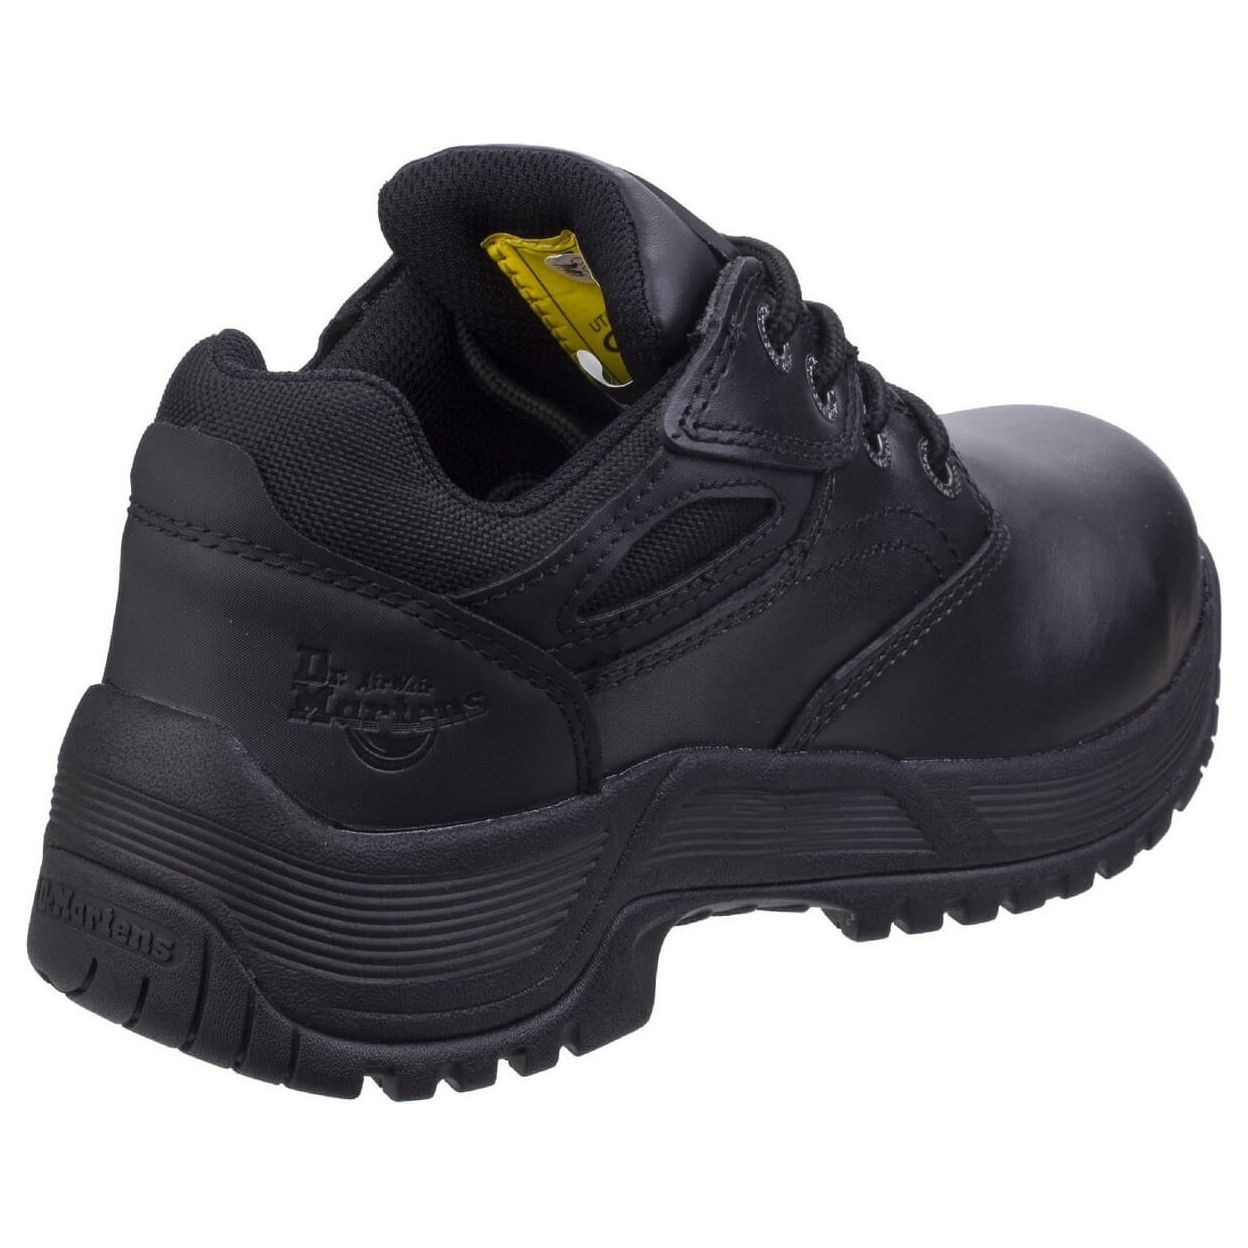 Dr Martens Calvert Steel Toe Safety Shoes-Black-2